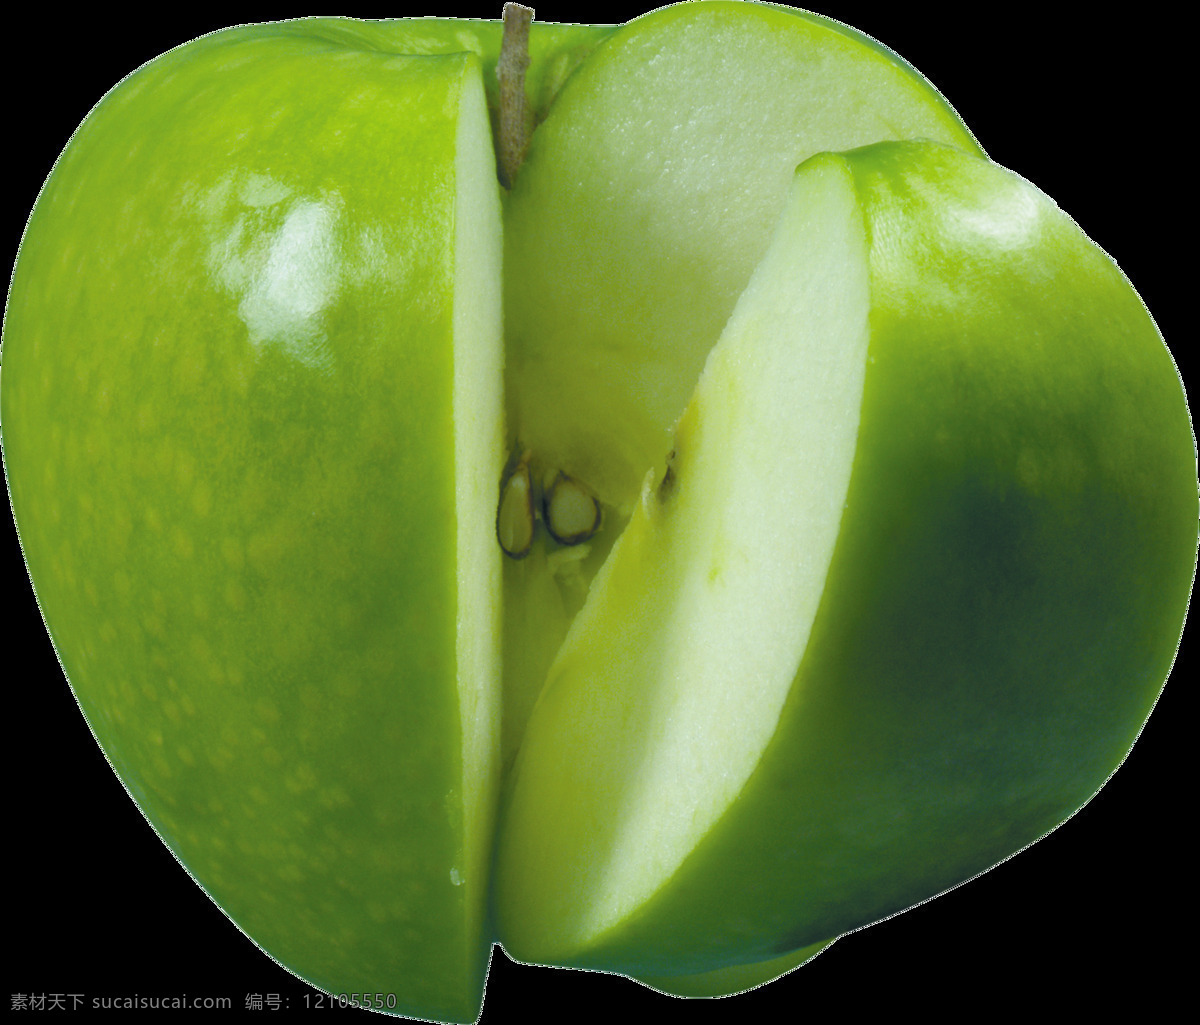 漂亮 切开 苹果 免 抠 透明 图 层 青苹果 苹果卡通图片 苹果logo 苹果简笔画 壁纸高清 大苹果 红苹果 苹果梨树 苹果商标 金毛苹果 青苹果榨汁